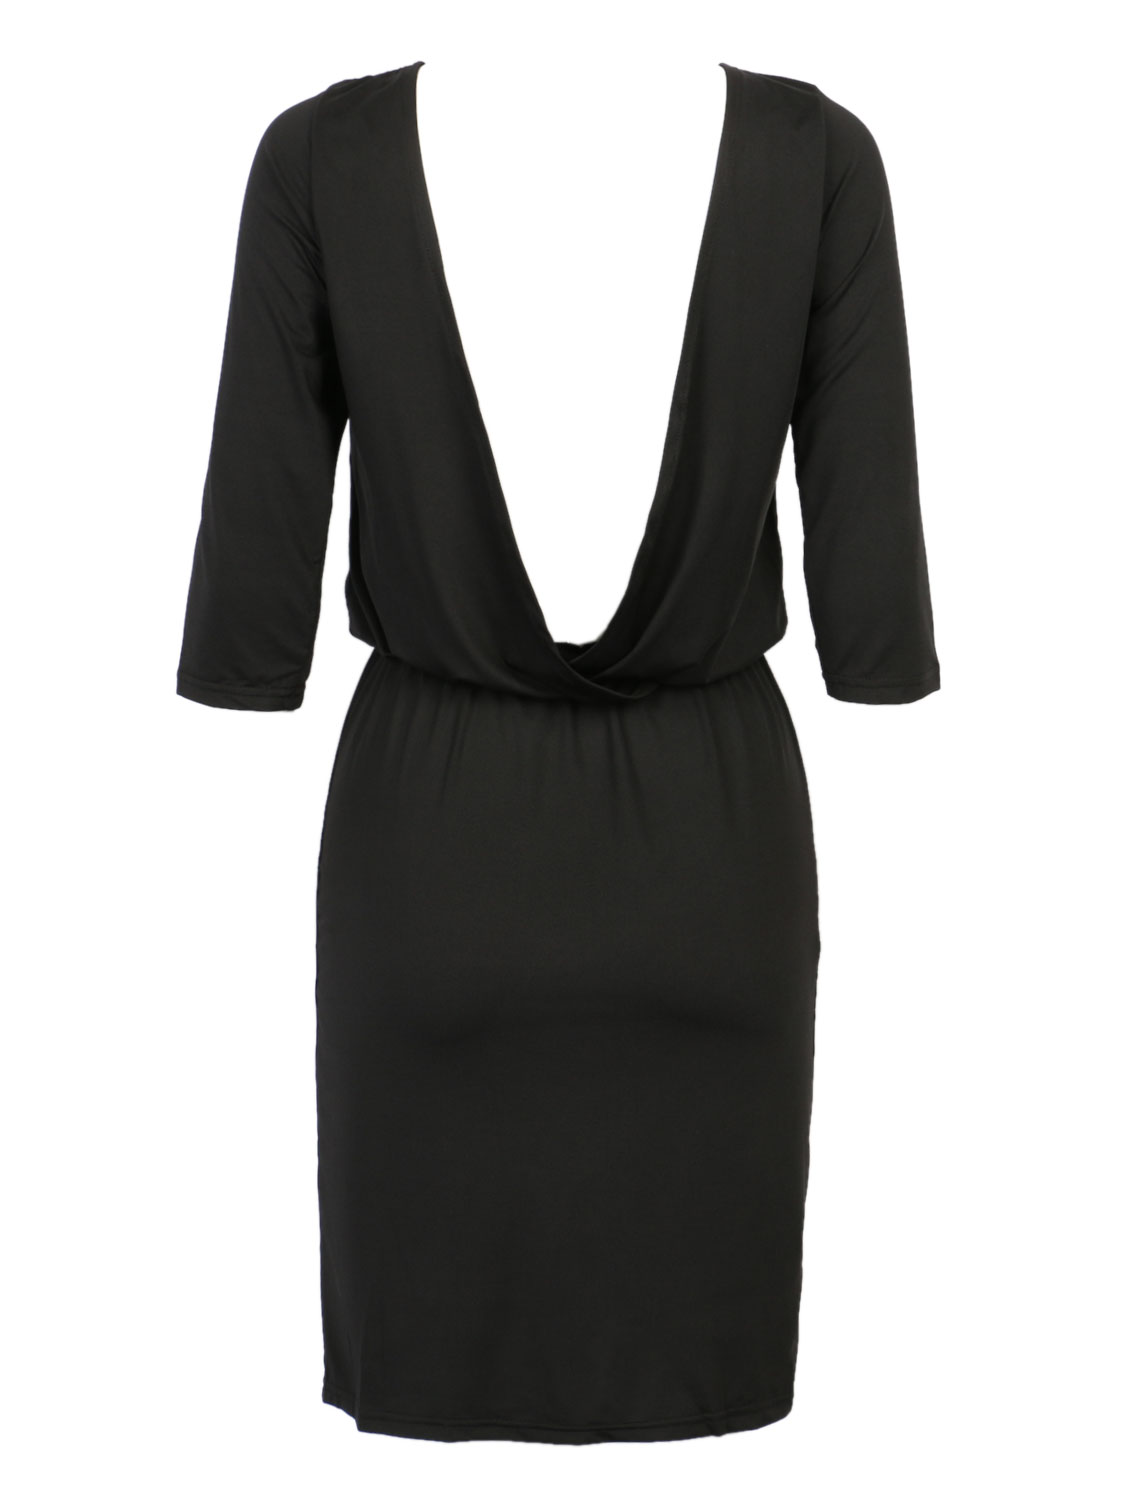 Black Half Sleeve Backless Bodycon Dress | Choies